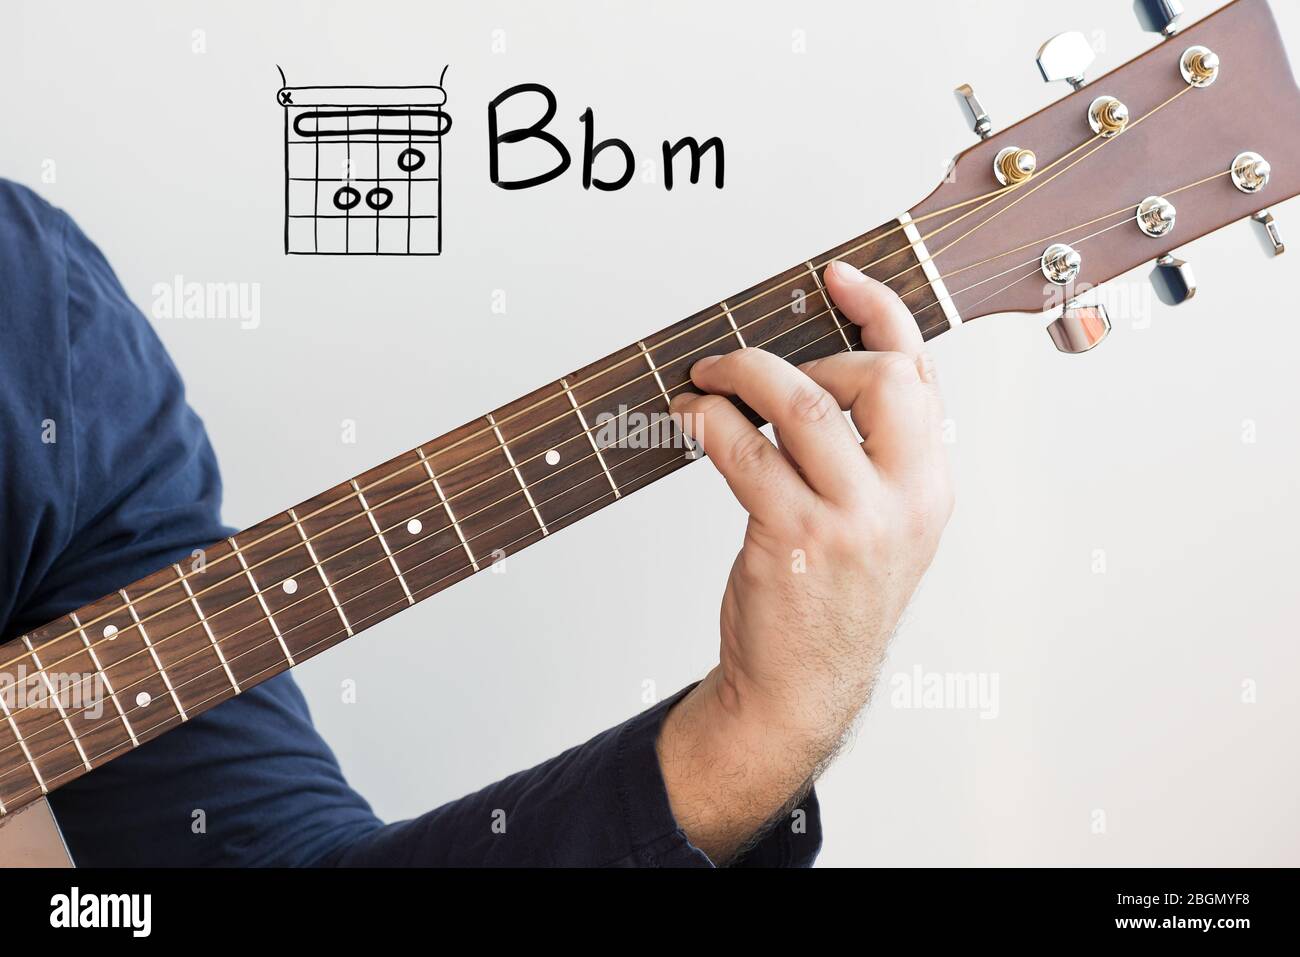 Learn Guitar - Hombre en una camisa azul oscuro tocando acordes de guitarra  mostrados en la pizarra blanca, acorde B plano menor Fotografía de stock -  Alamy